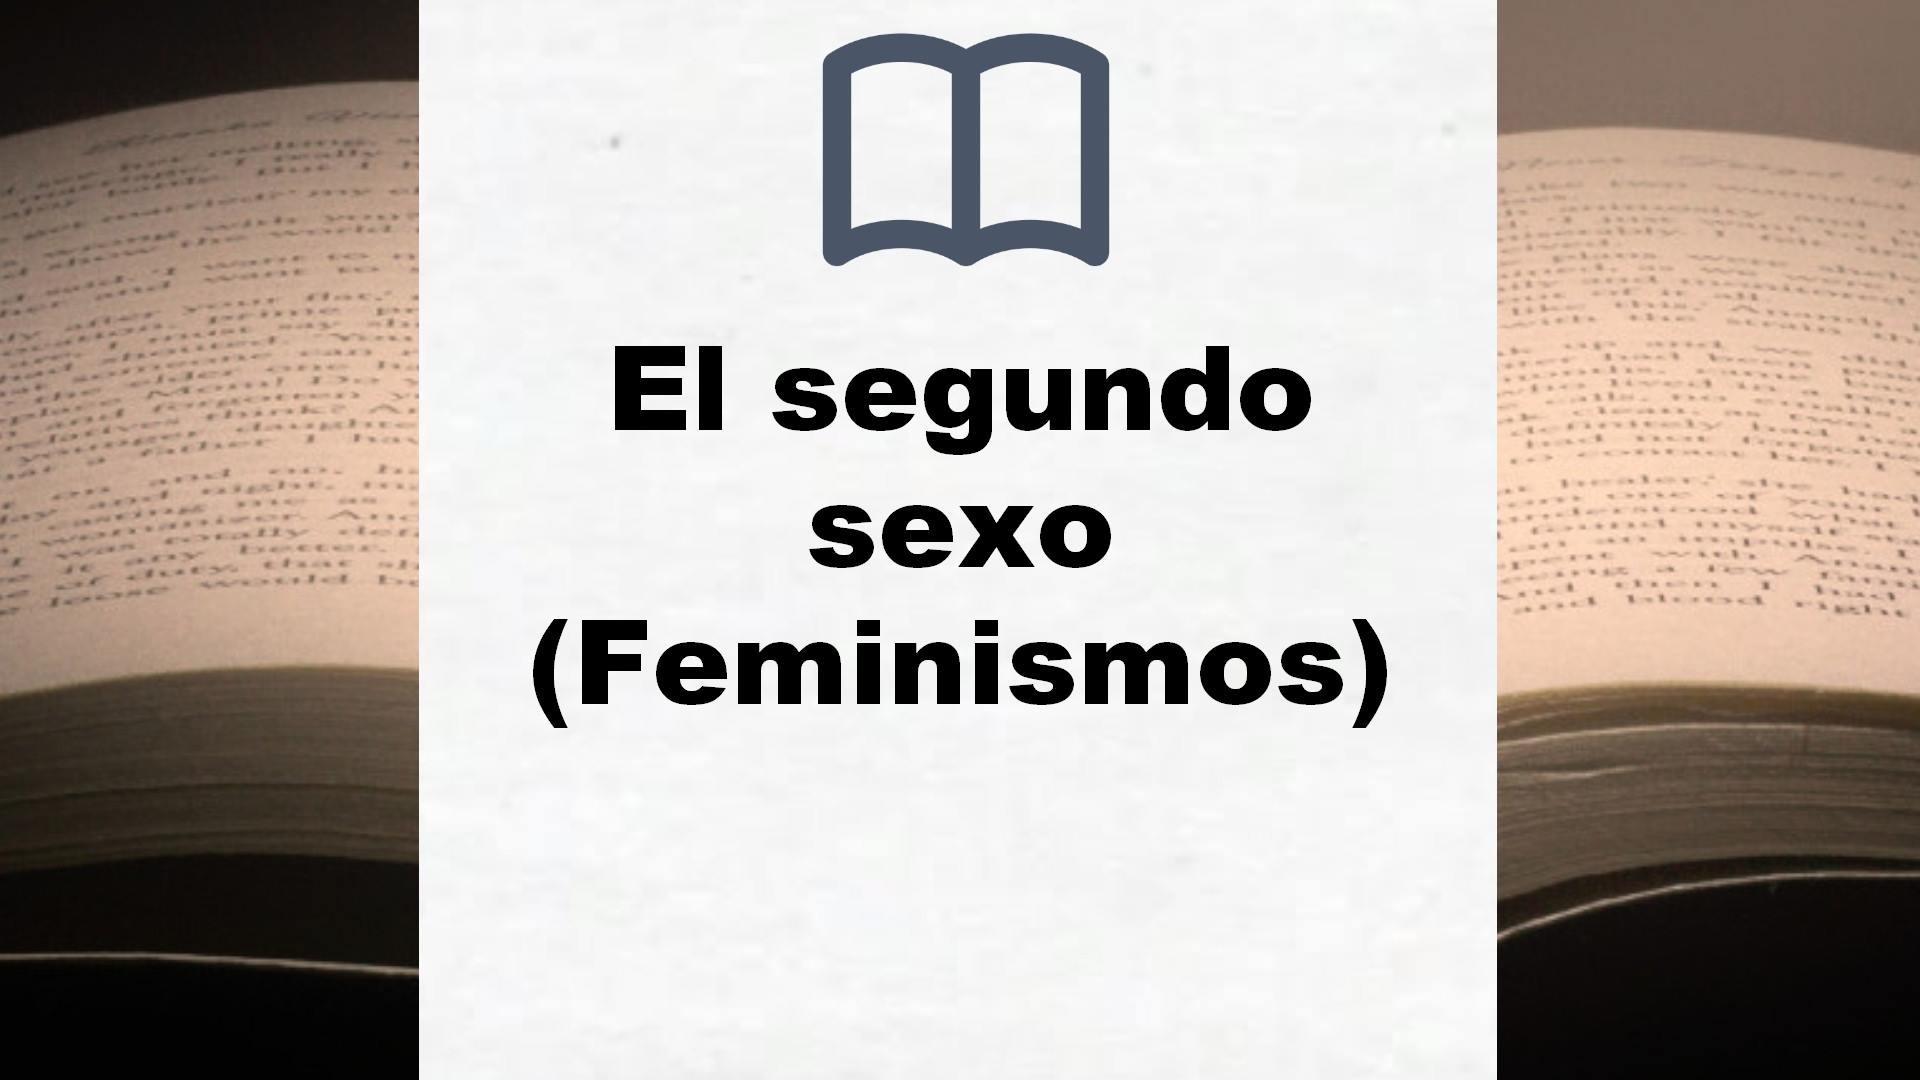 El segundo sexo (Feminismos) – Reseña del libro